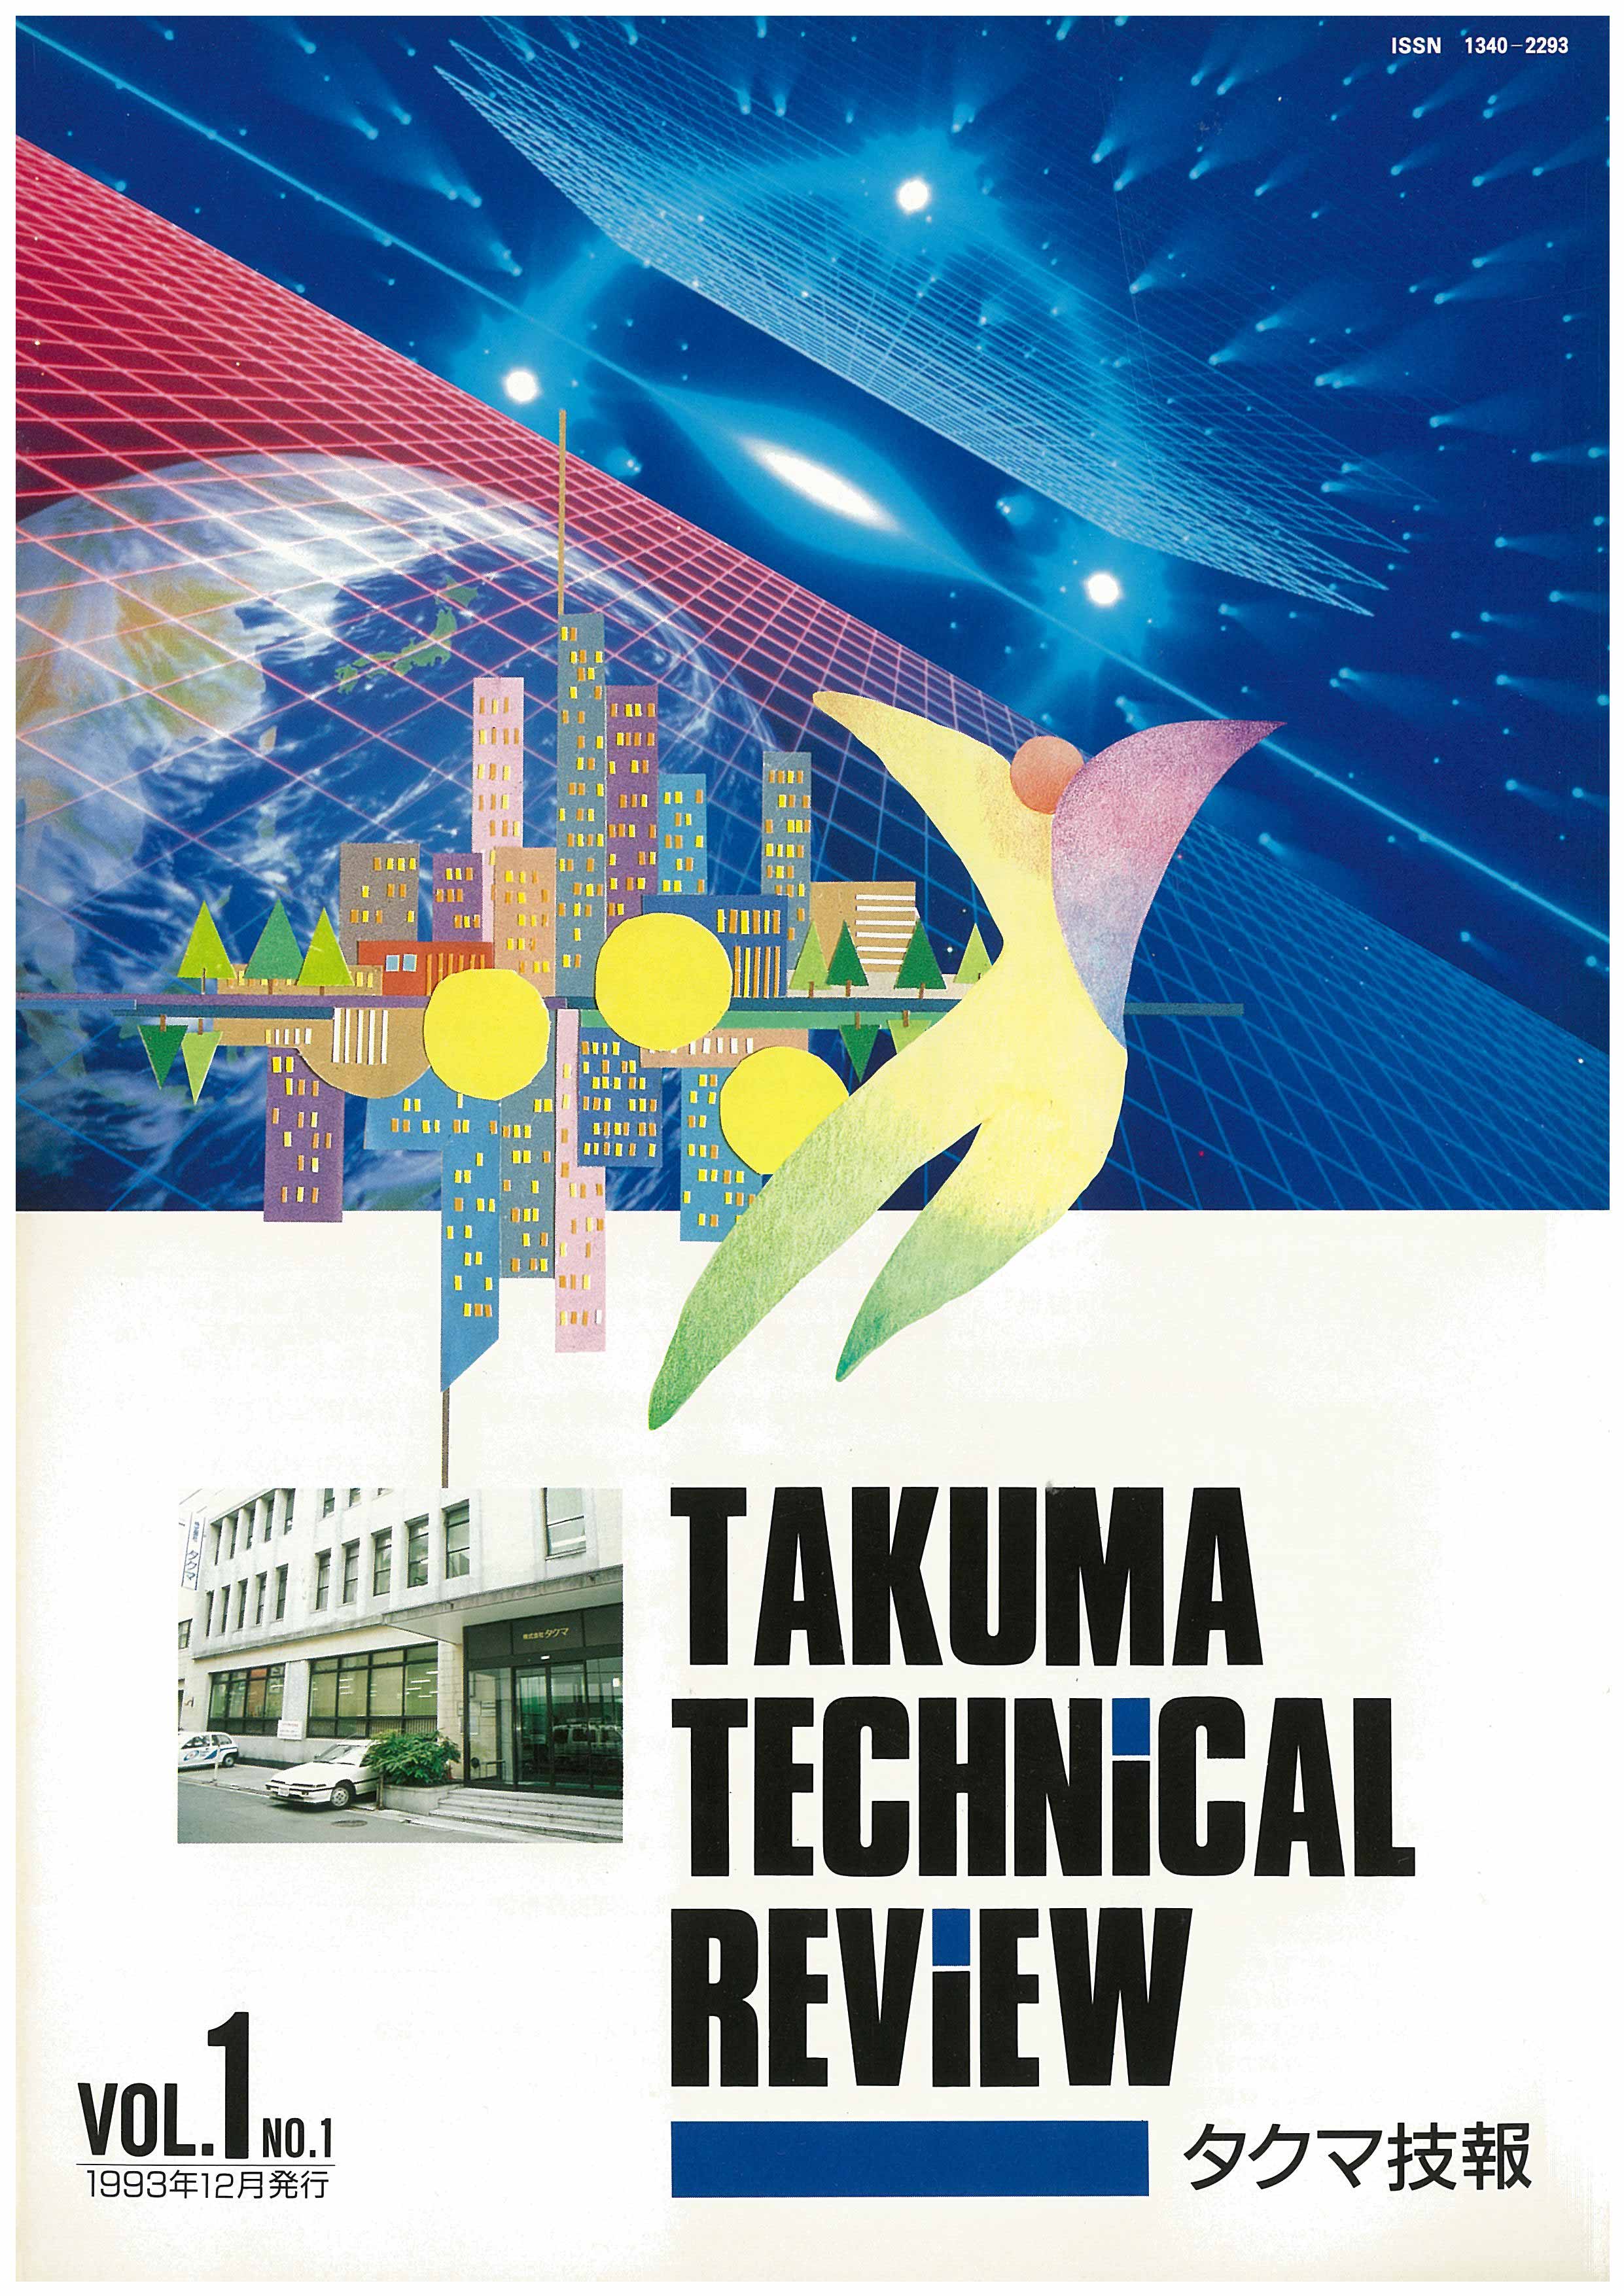 タクマ技報 VOL.1 NO.1（1993年12月発行）